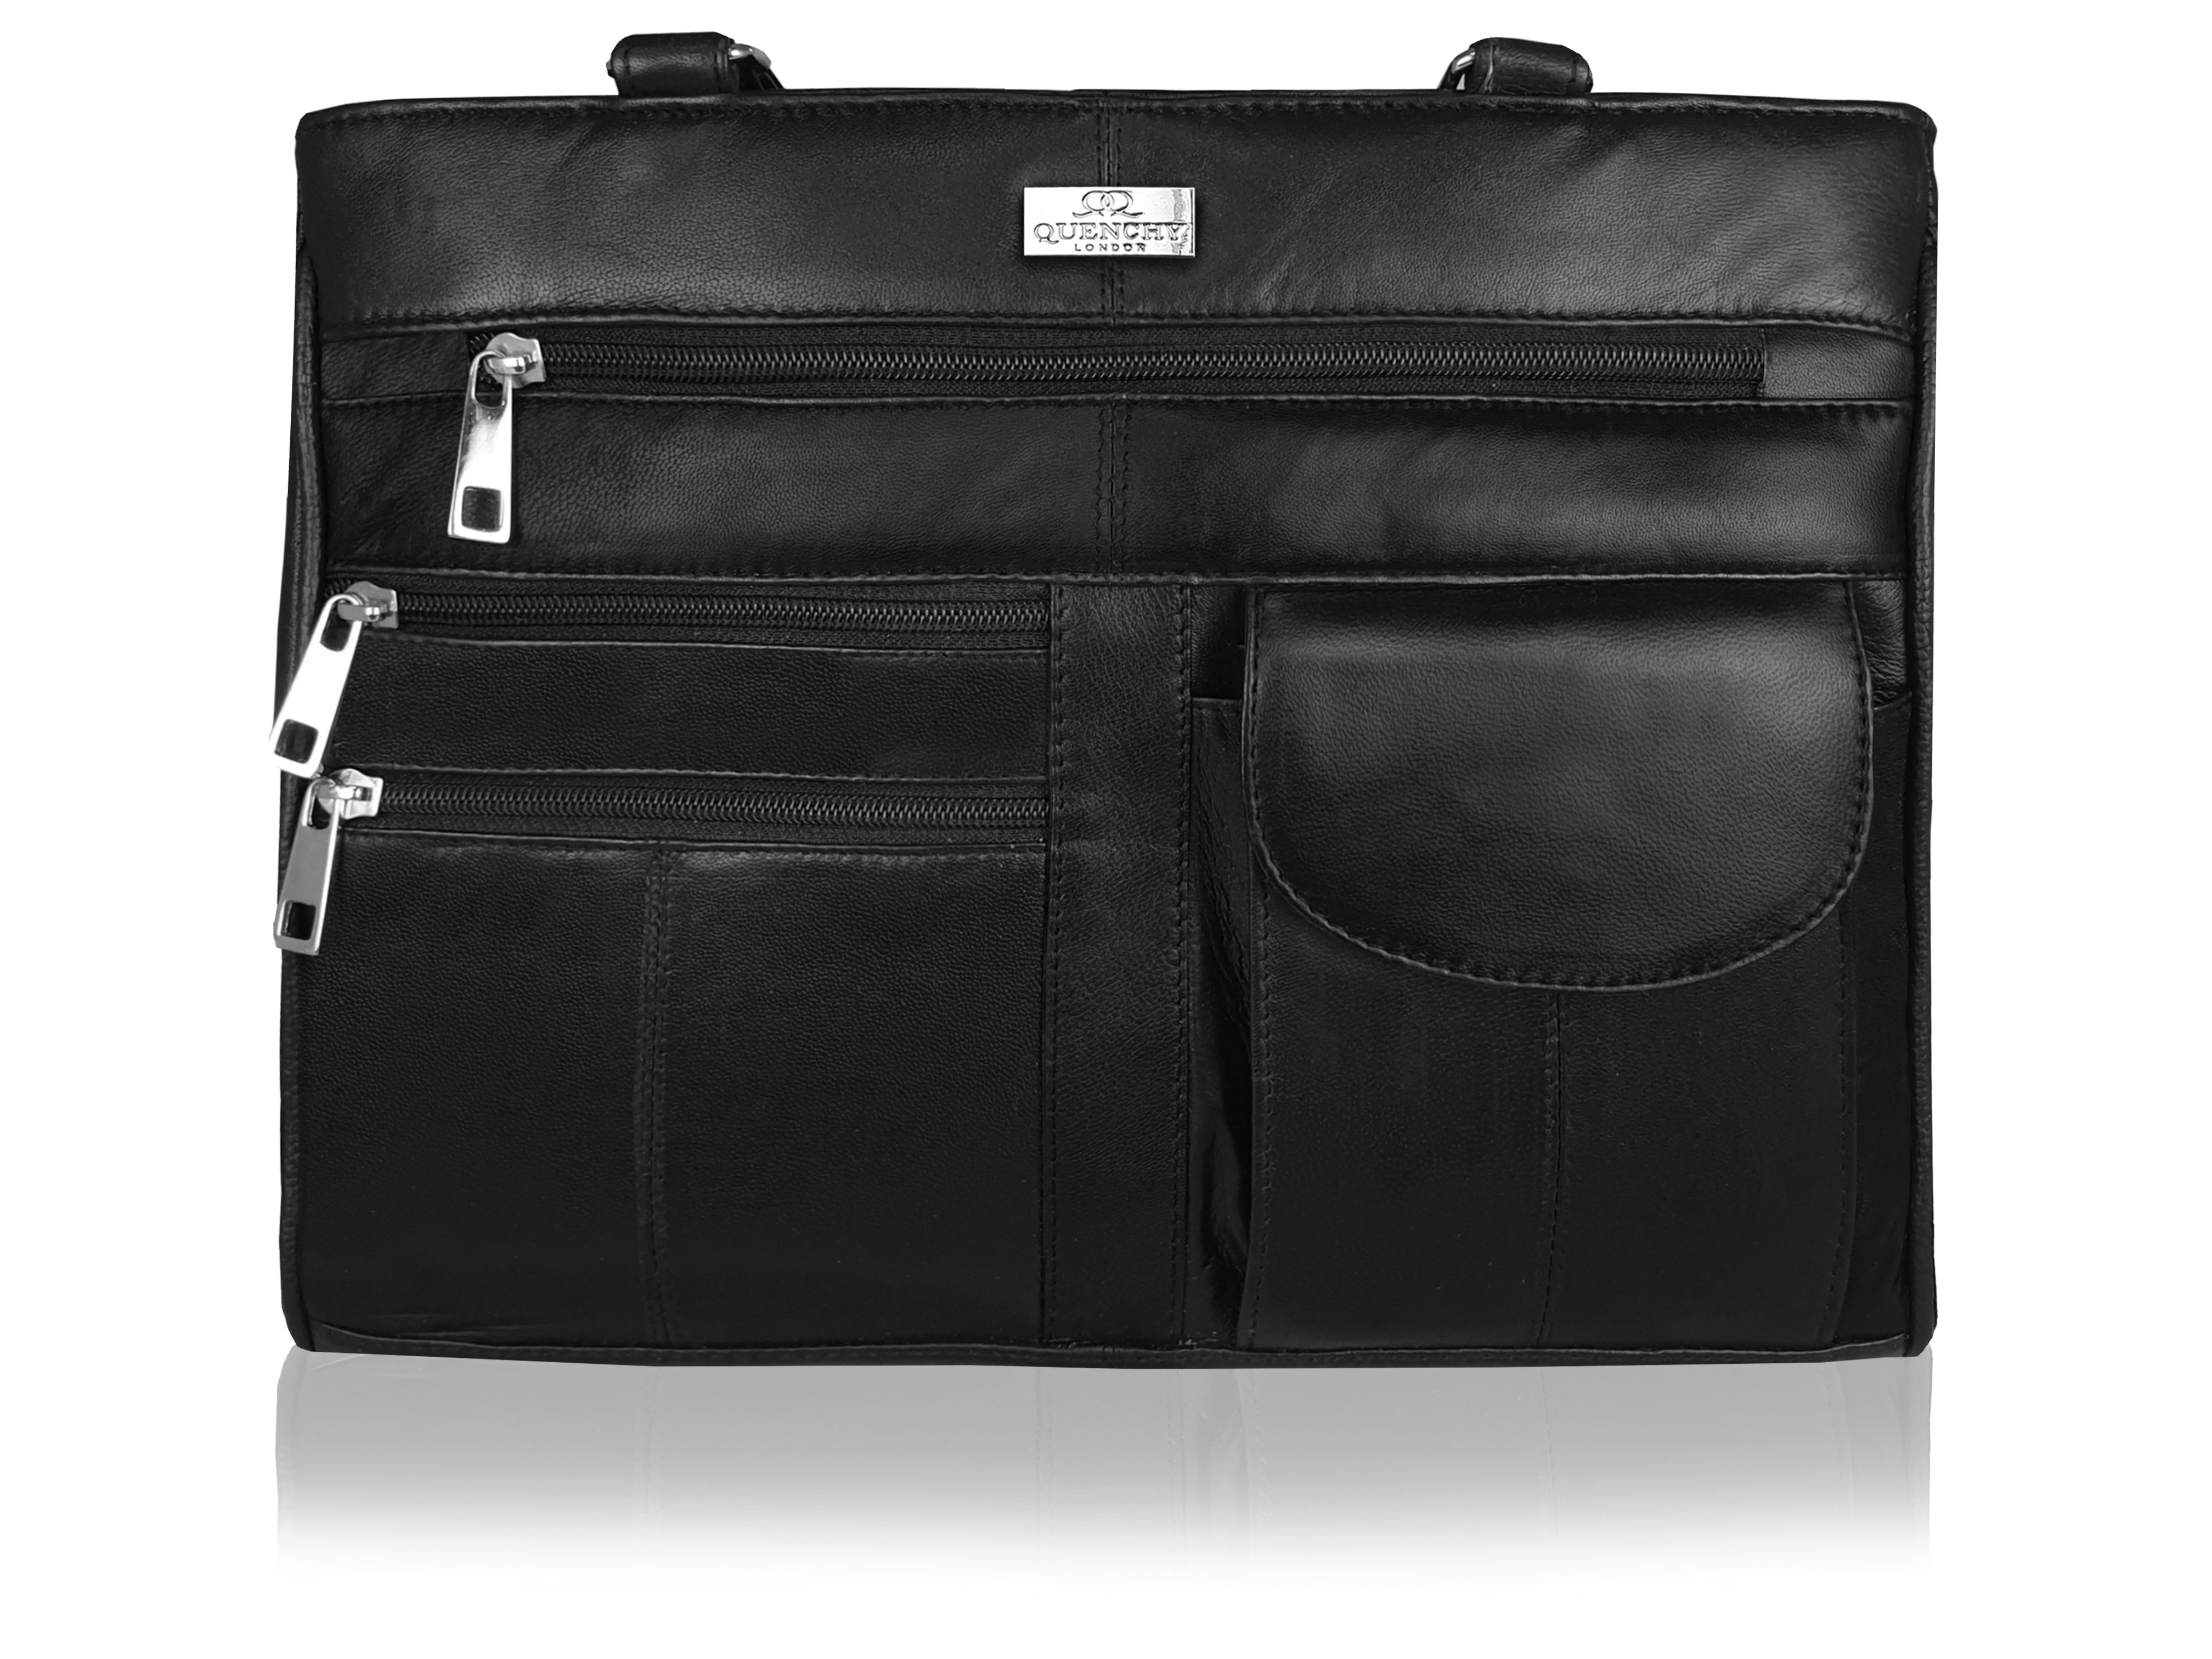 Leather-Handbag-QL173-F.jpg